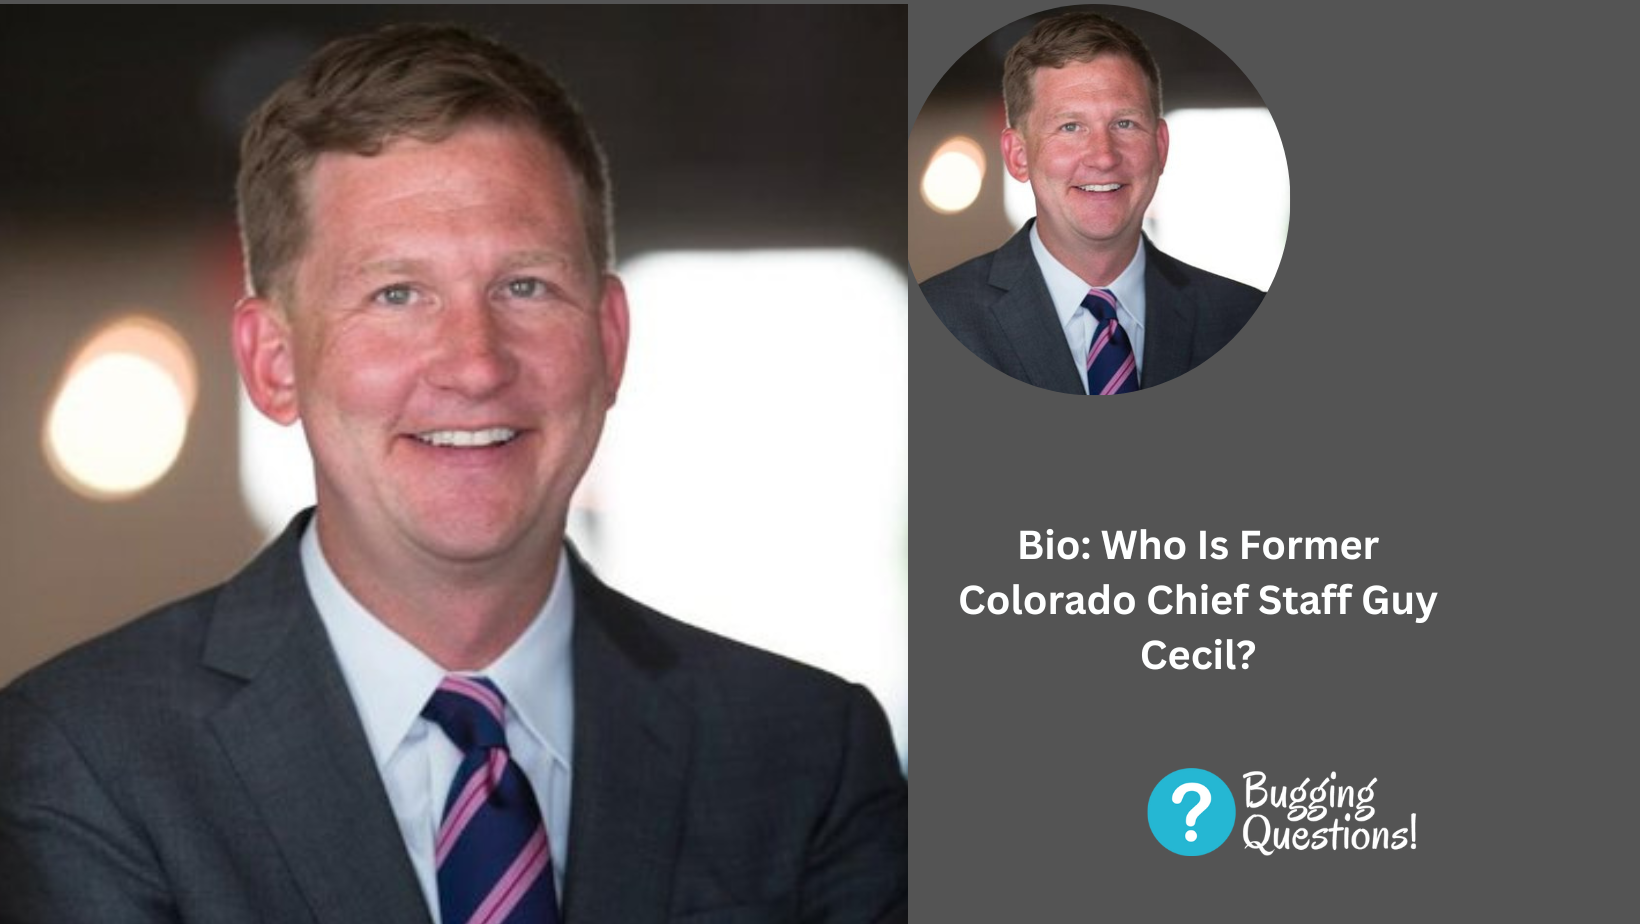 Bio: Who Is Former Colorado Chief Staff Guy Cecil?